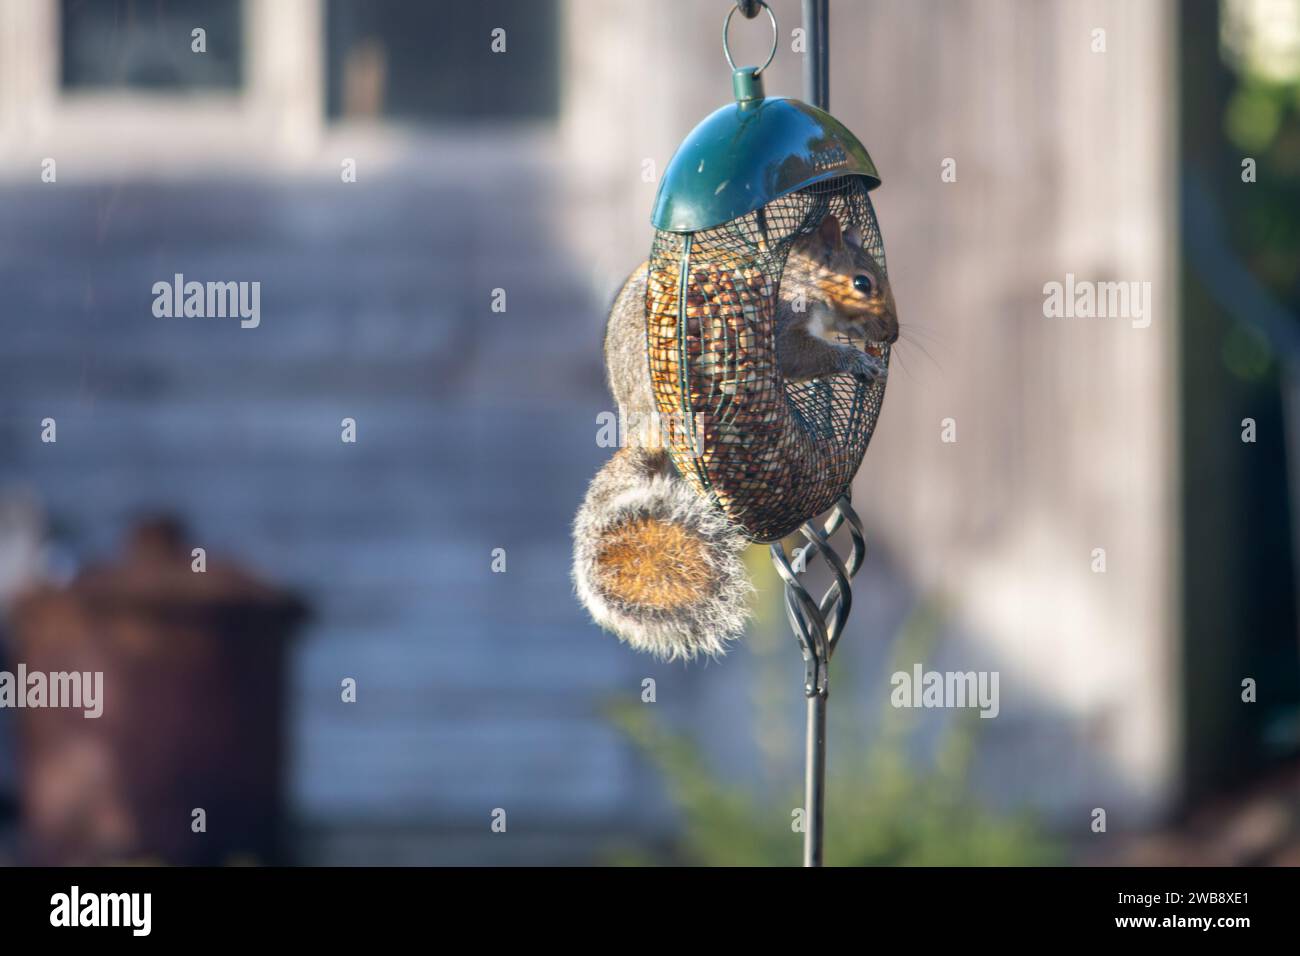 A squirrel hanging onto a bird feeder in an English garden Stock Photo